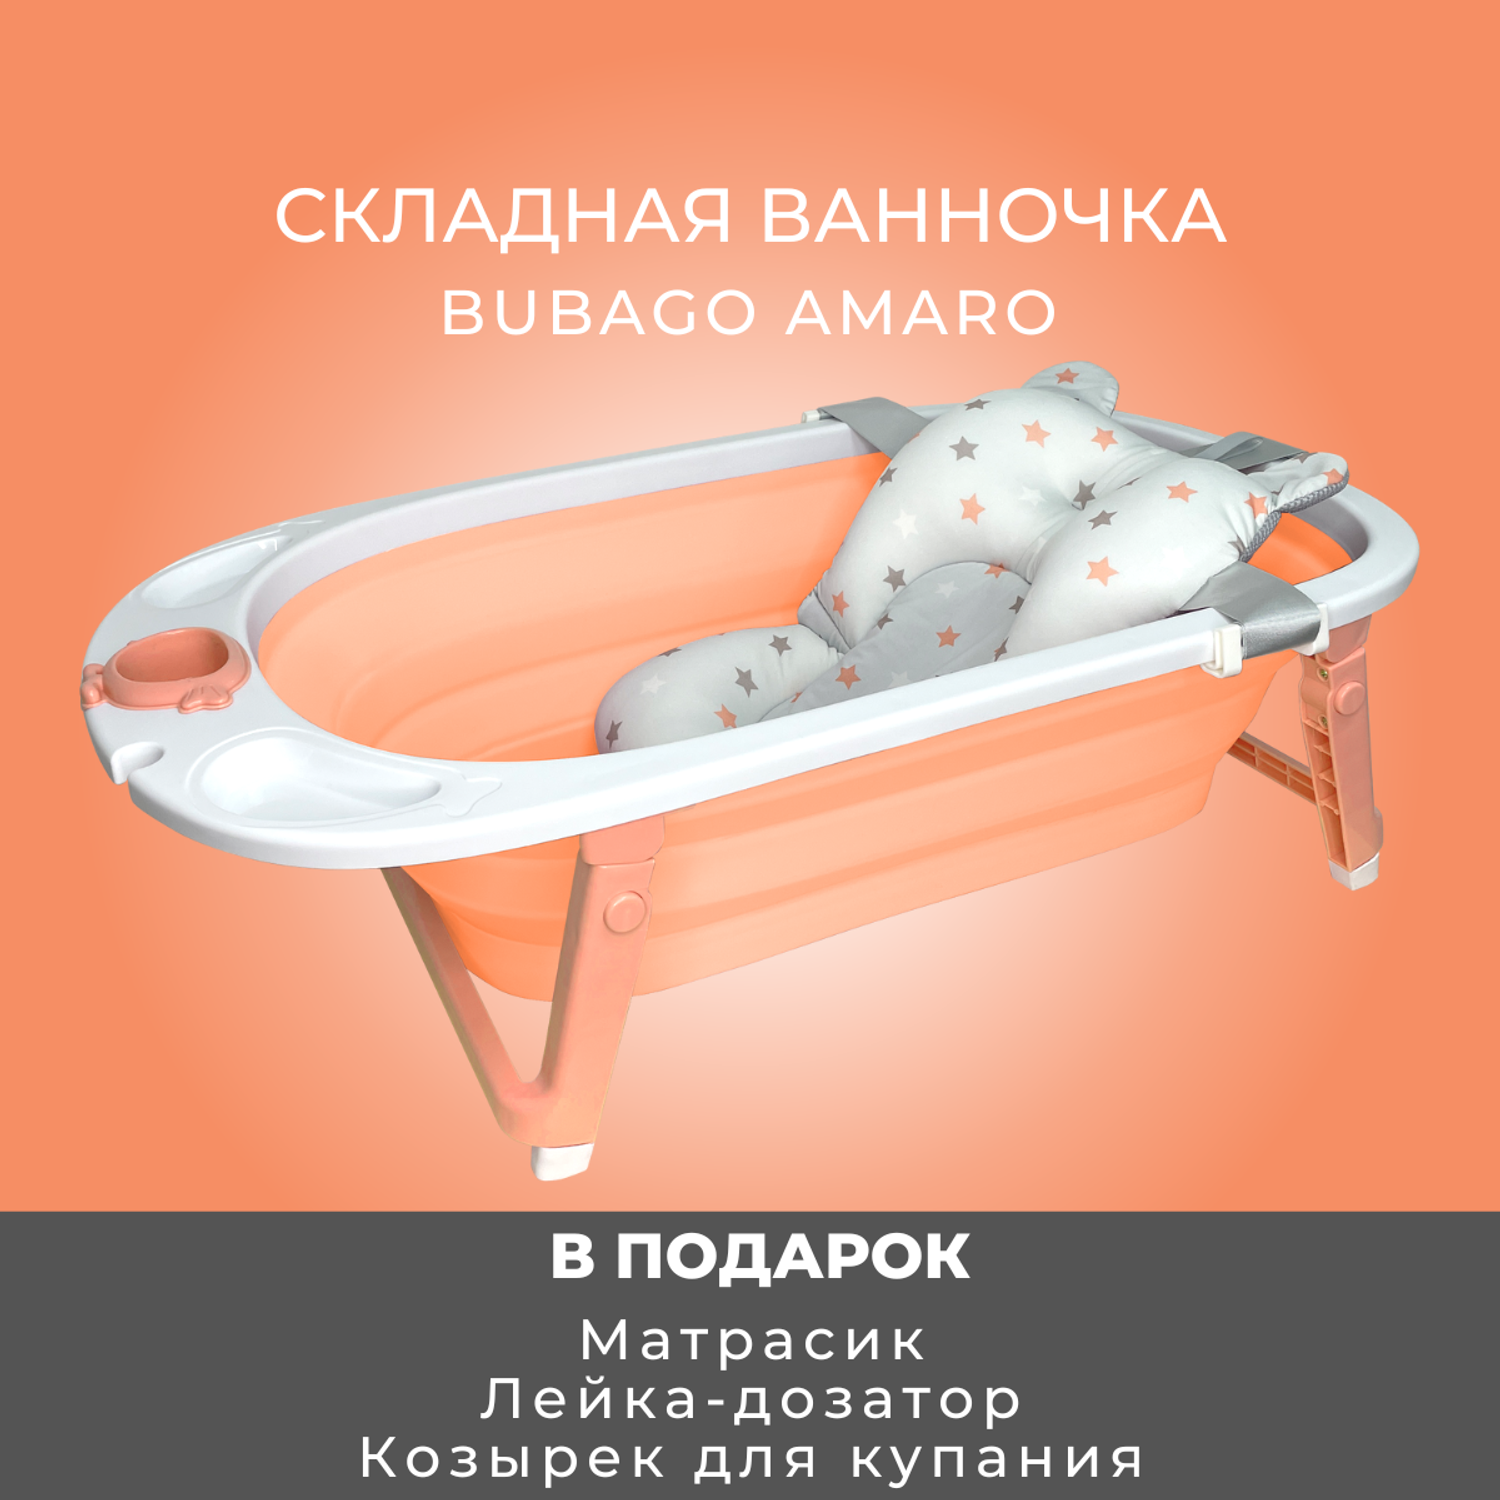 Ванночка детская складная Bubago Amaro с матрасиком для новорожденных - фото 2